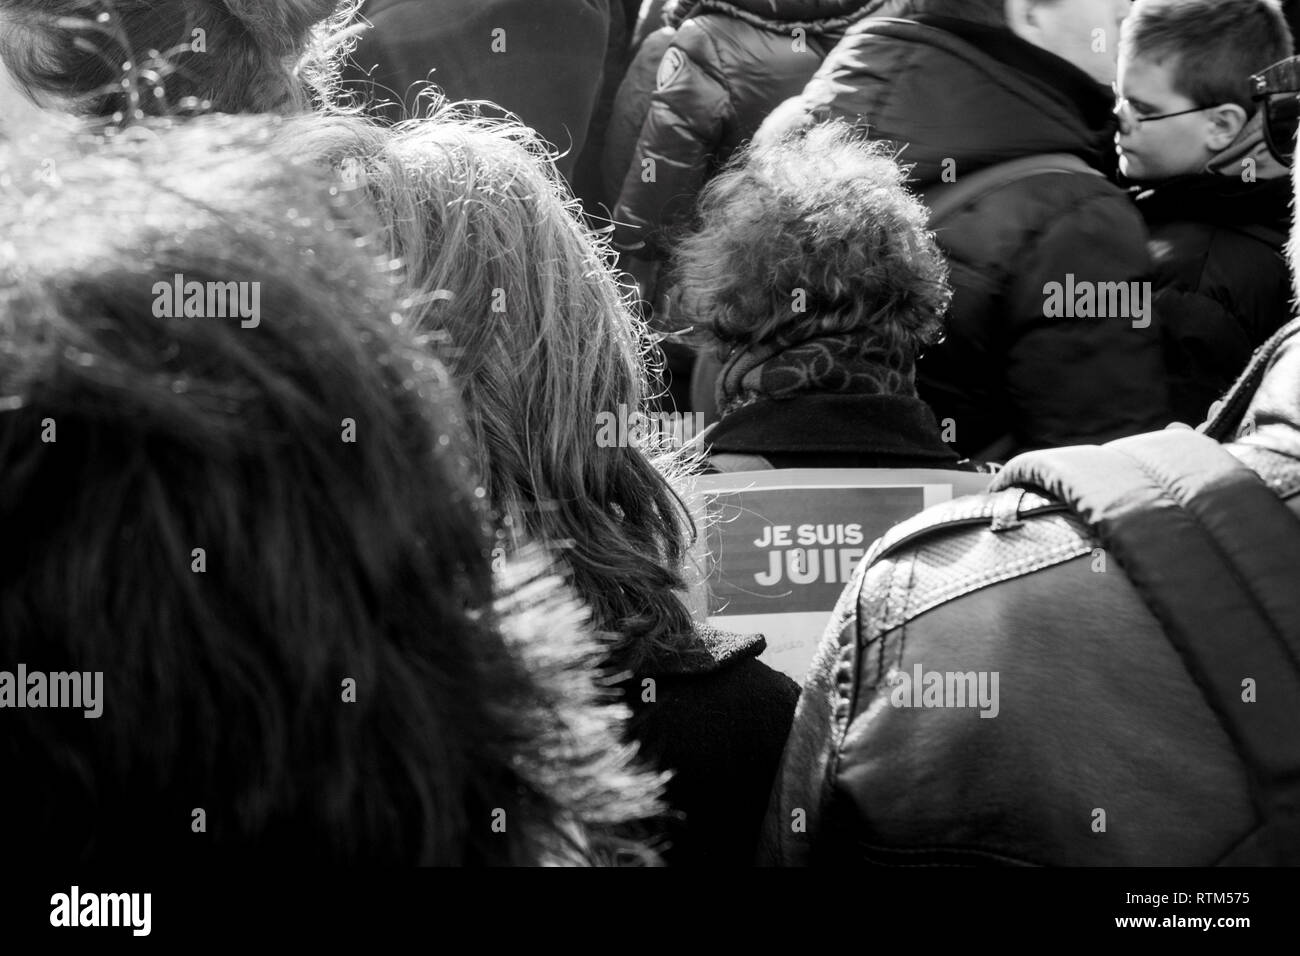 Straßburg, Frankreich - 1. NOVEMBER 2015: Ansicht von hinten von Je suis juif Pappe Zeichen an Protesten nach Paris Terroranschlag auf Charlie Hebdo Stockfoto